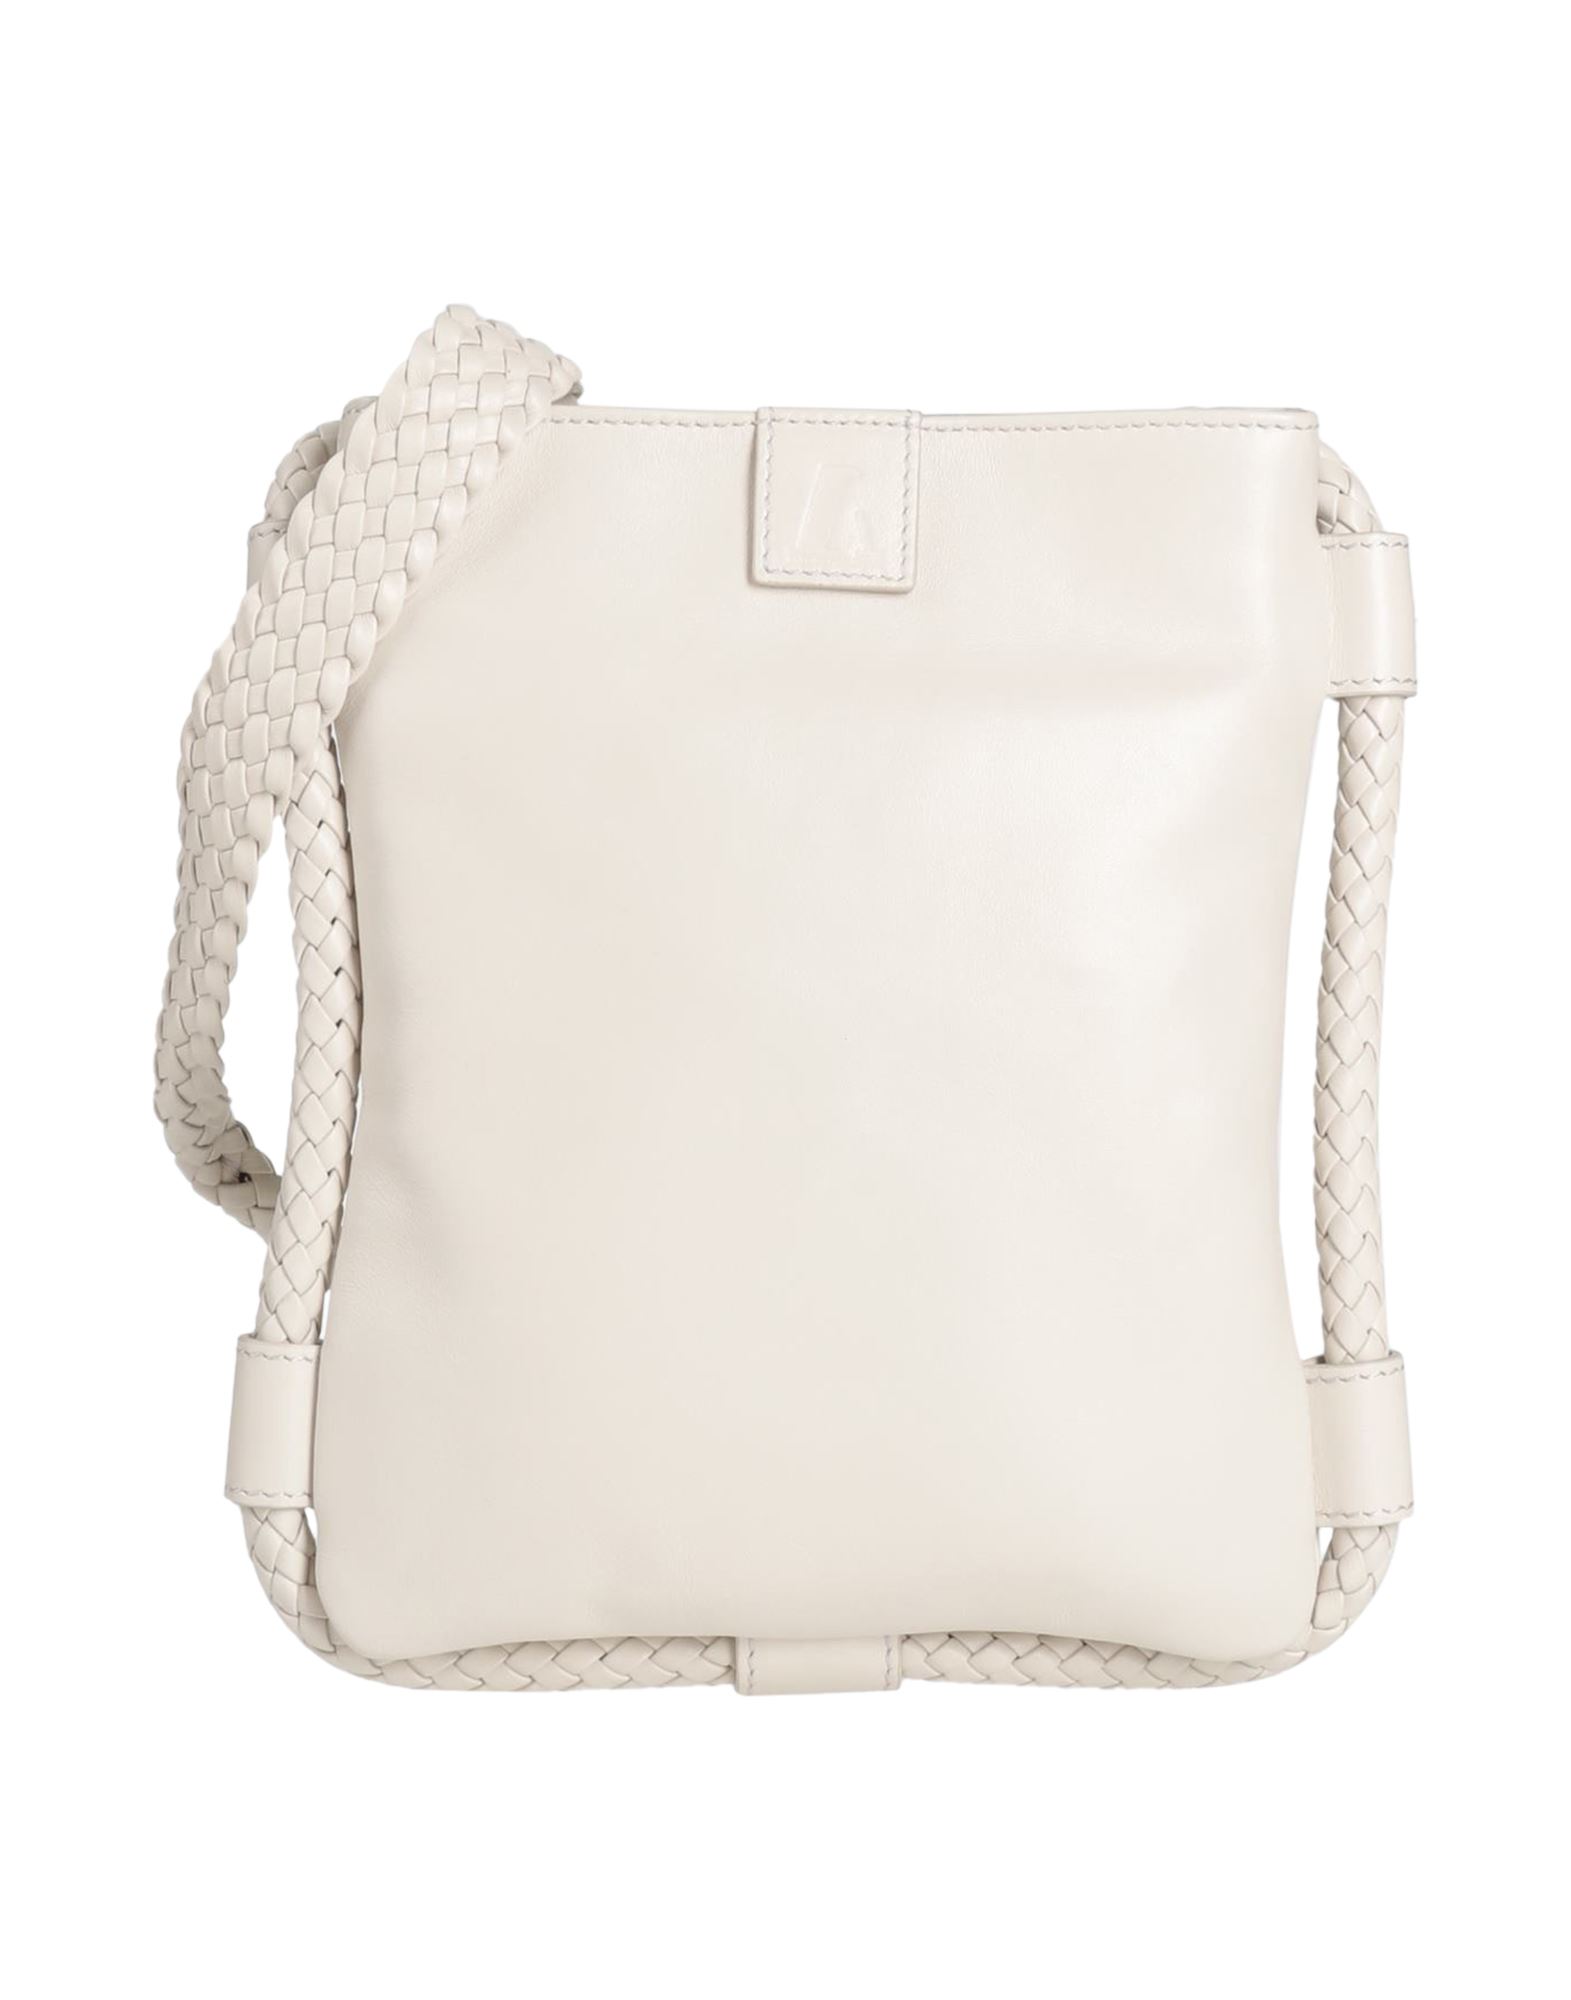 Emporio Armani Handbags In Ivory